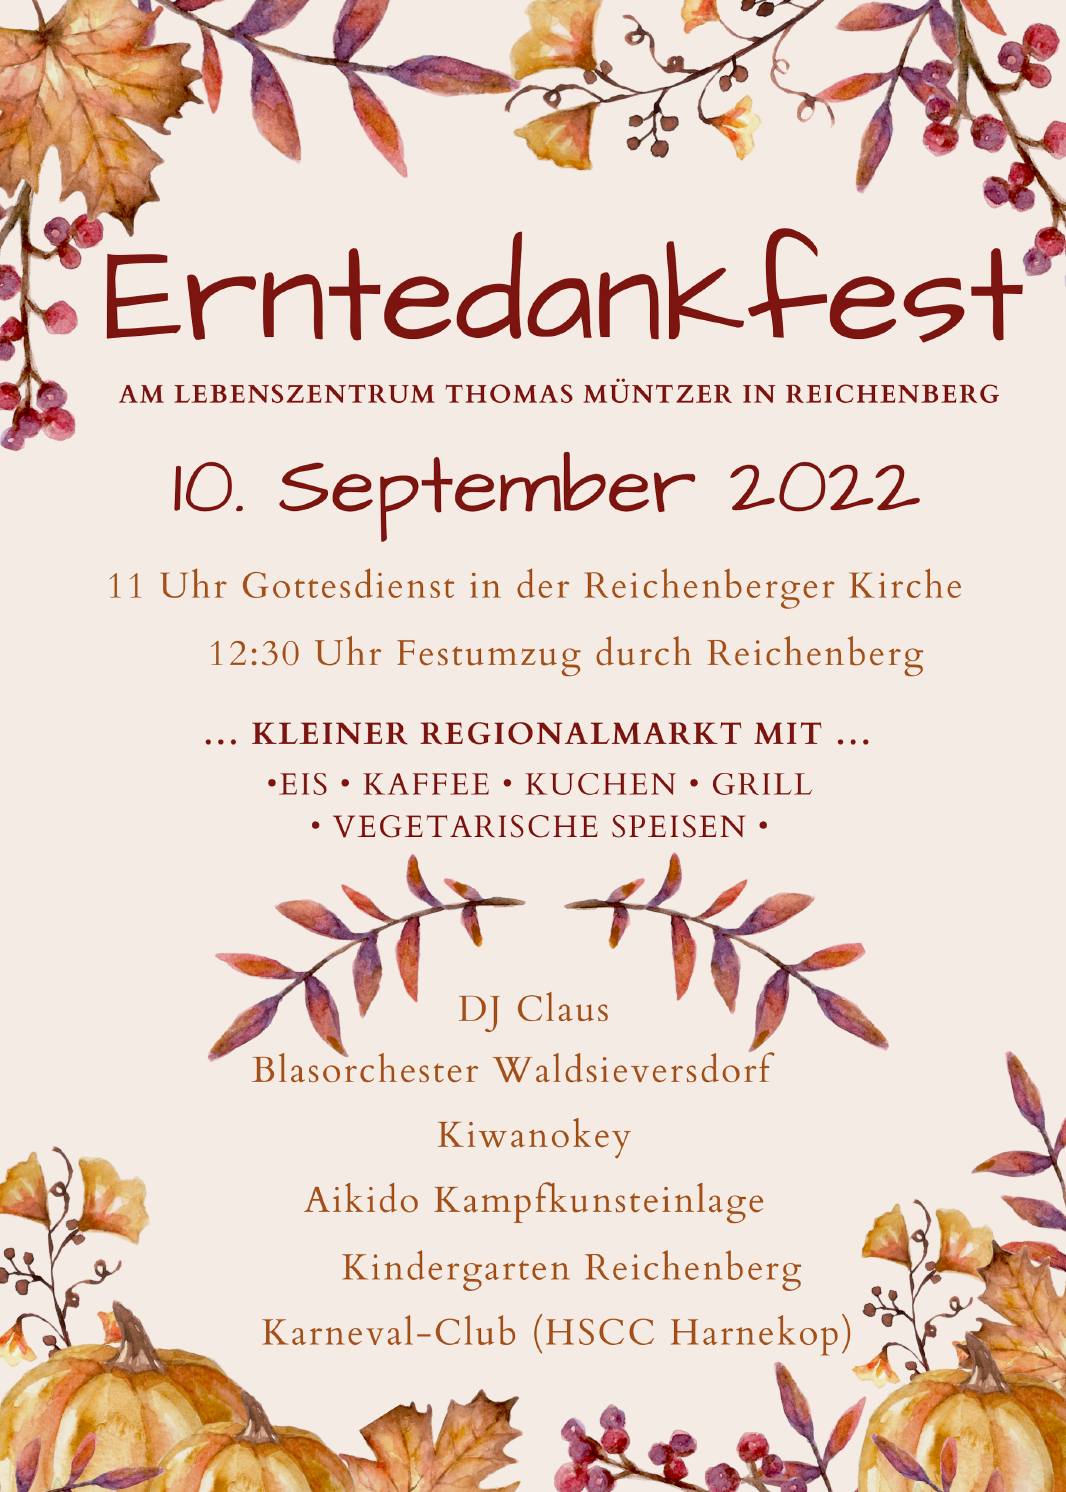 Erntedankfest in Reichenberg